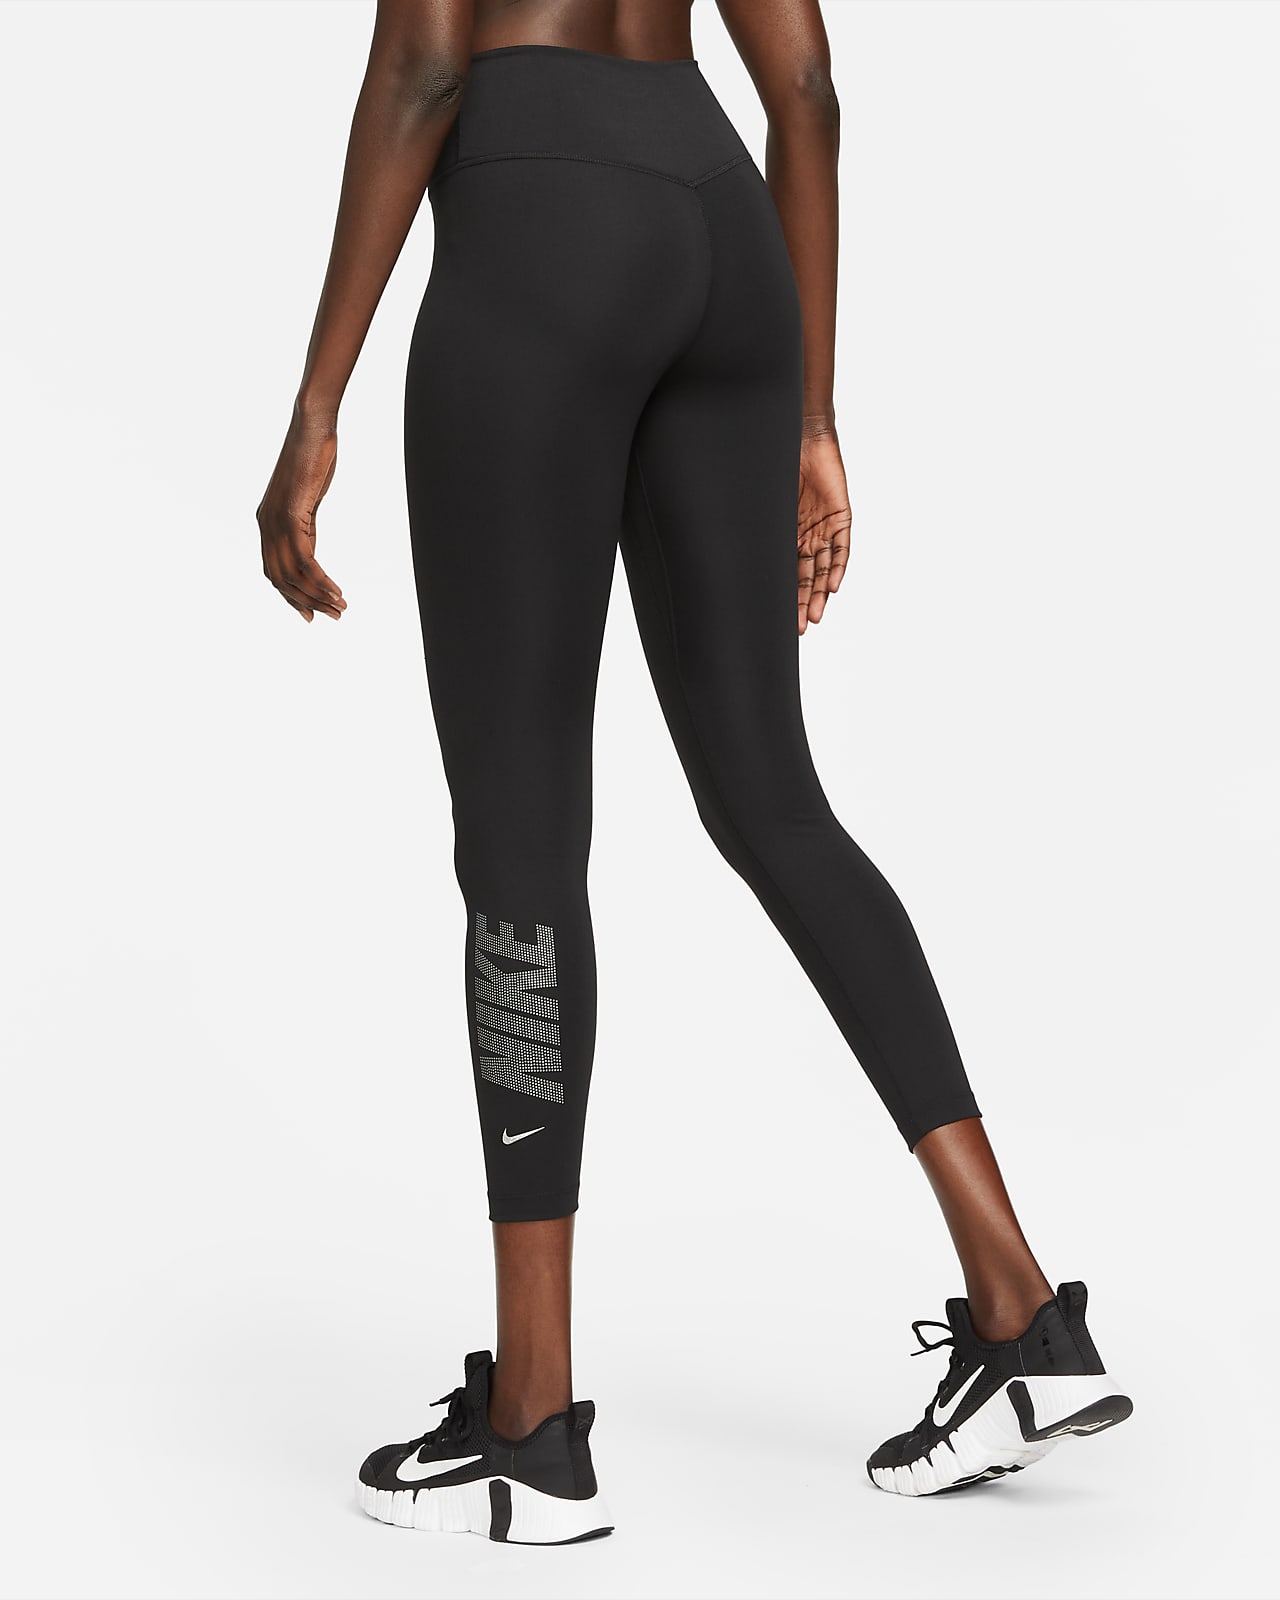 Legging 7/8 taille mi-haute à motif Nike Dri-FIT One pour Femme